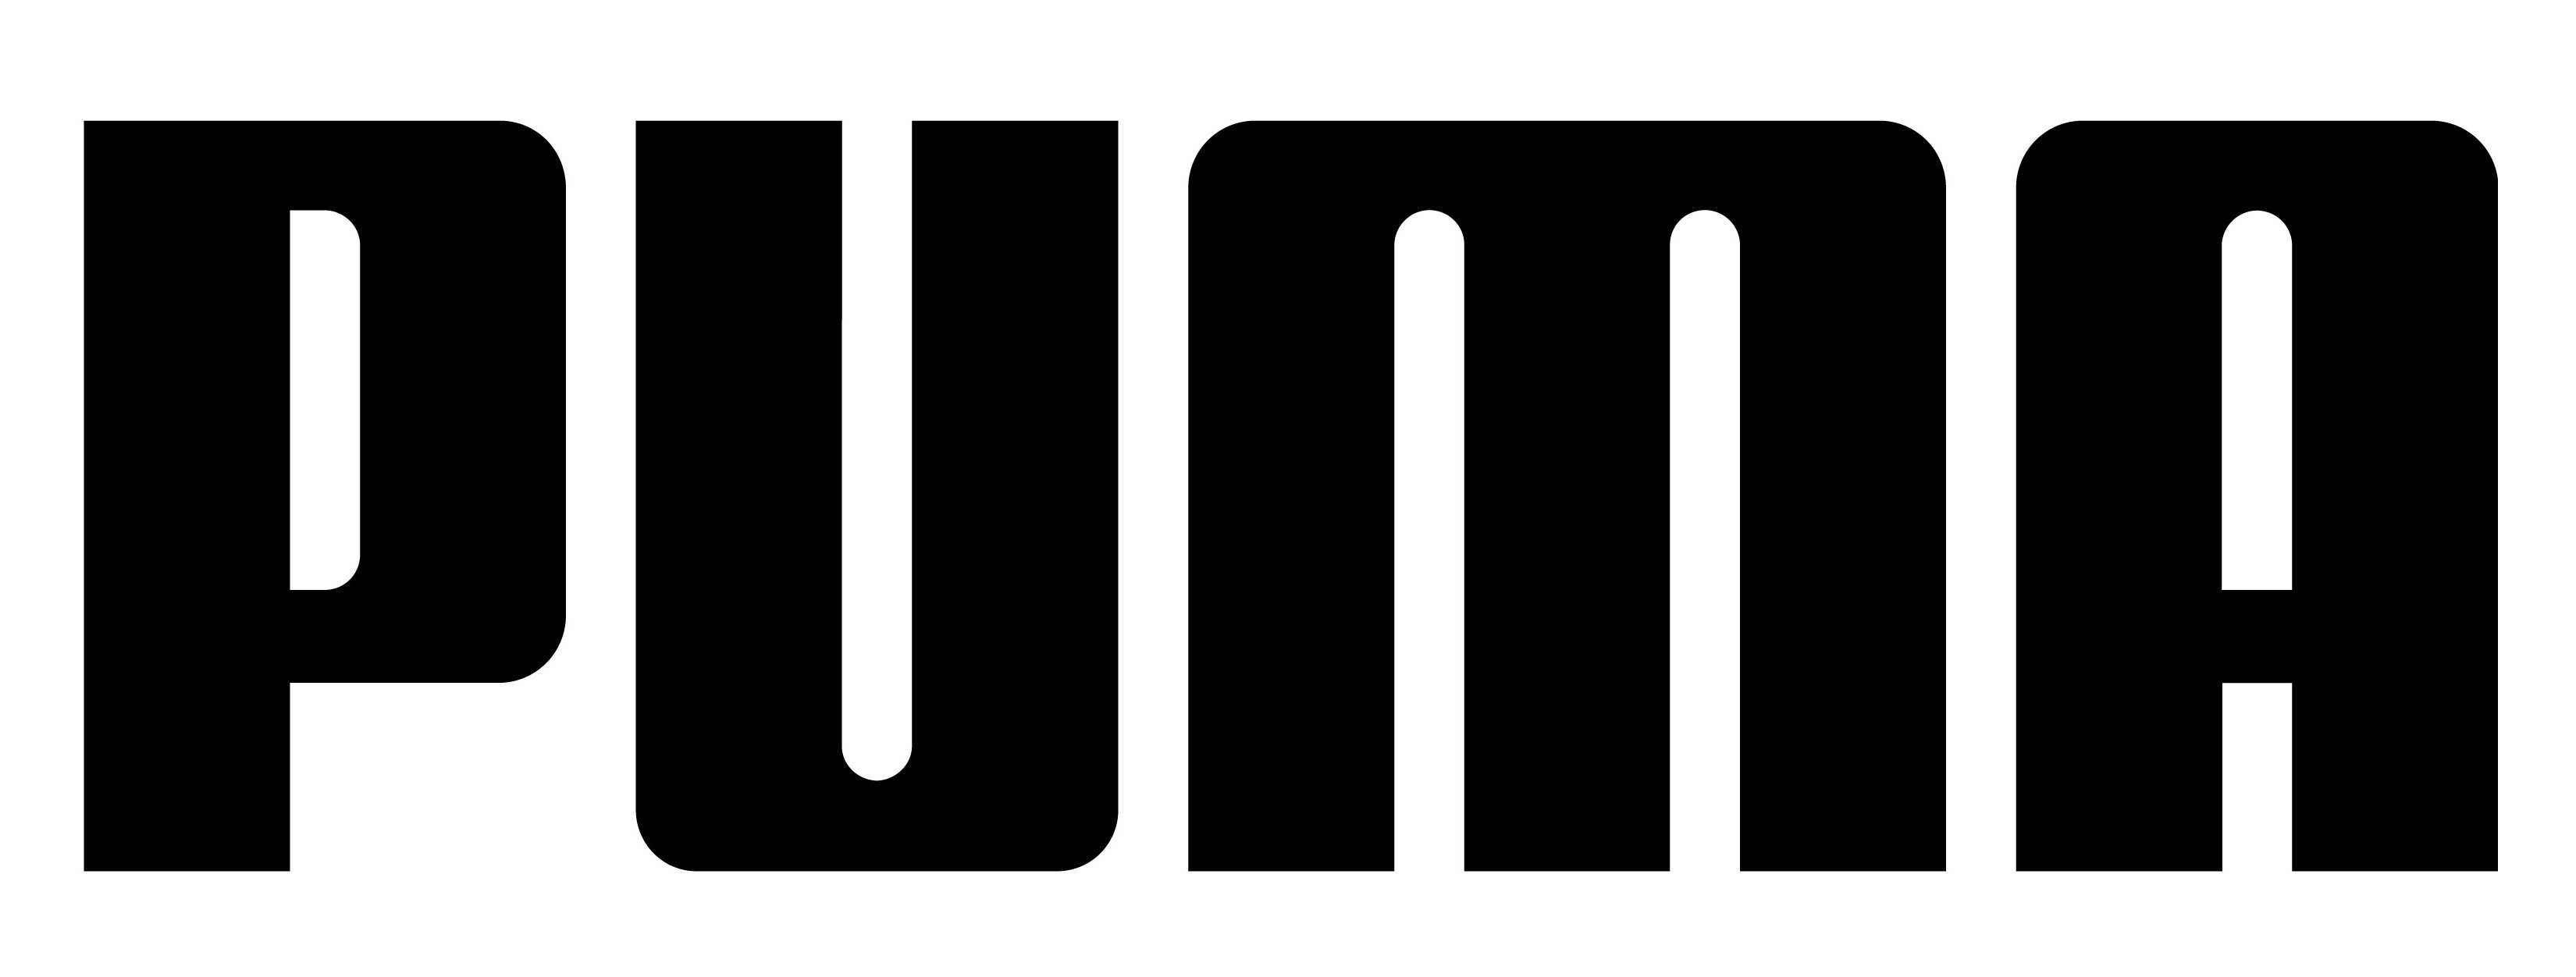 puma images logo